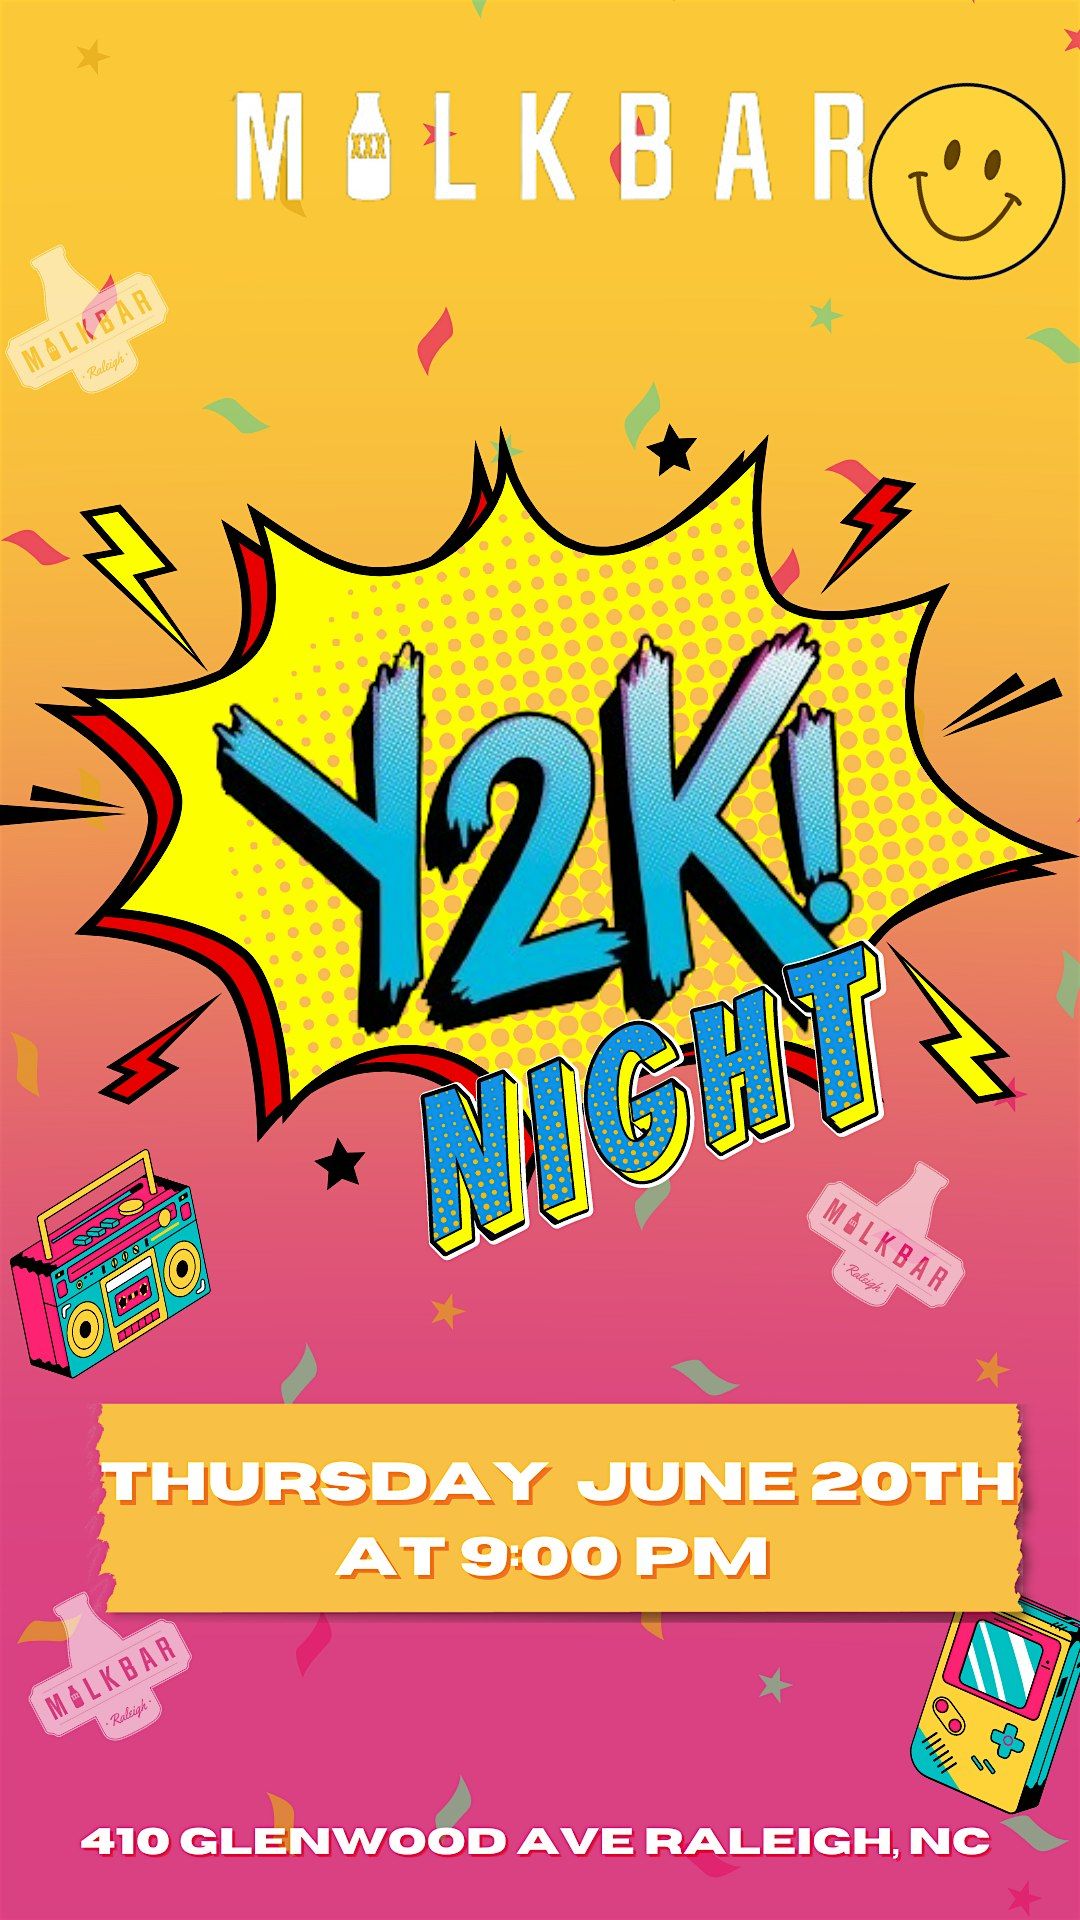 Y2K Night at Milk Bar